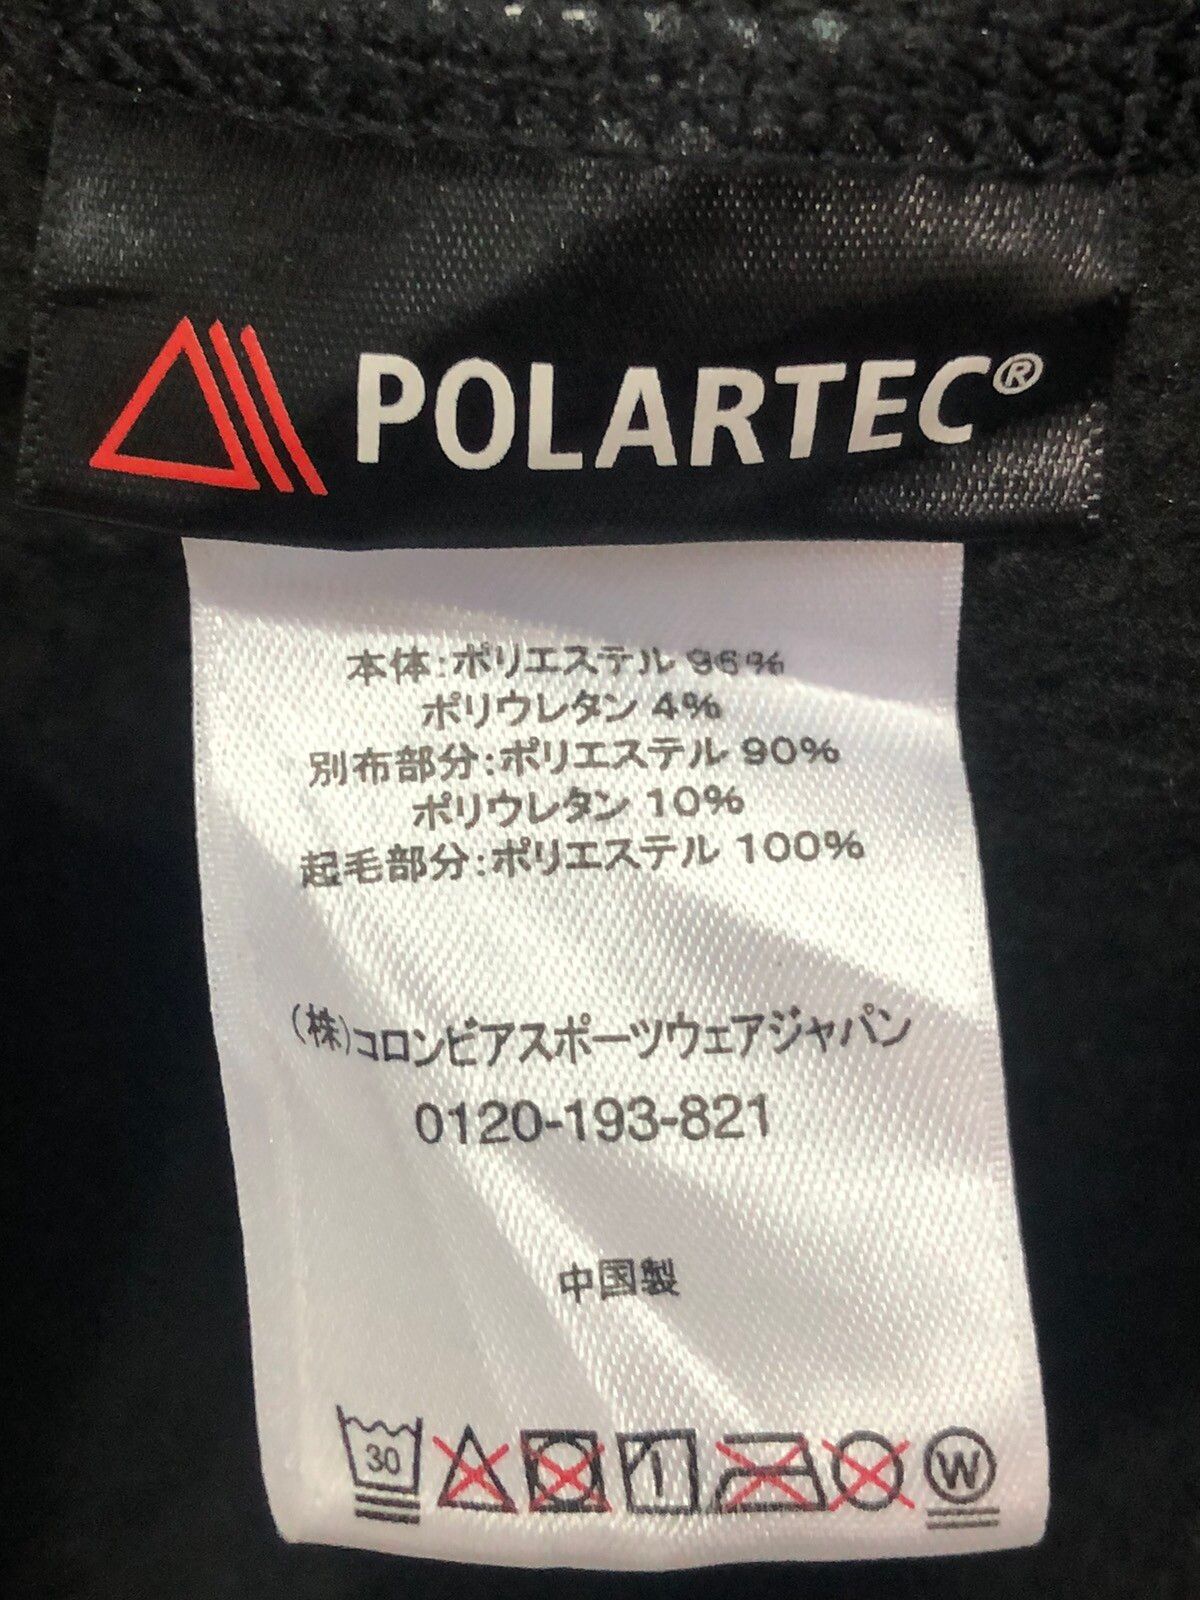 Outdoor Style Go Out! - Mountain Hardwear Polatec Fleece Jacket - 6